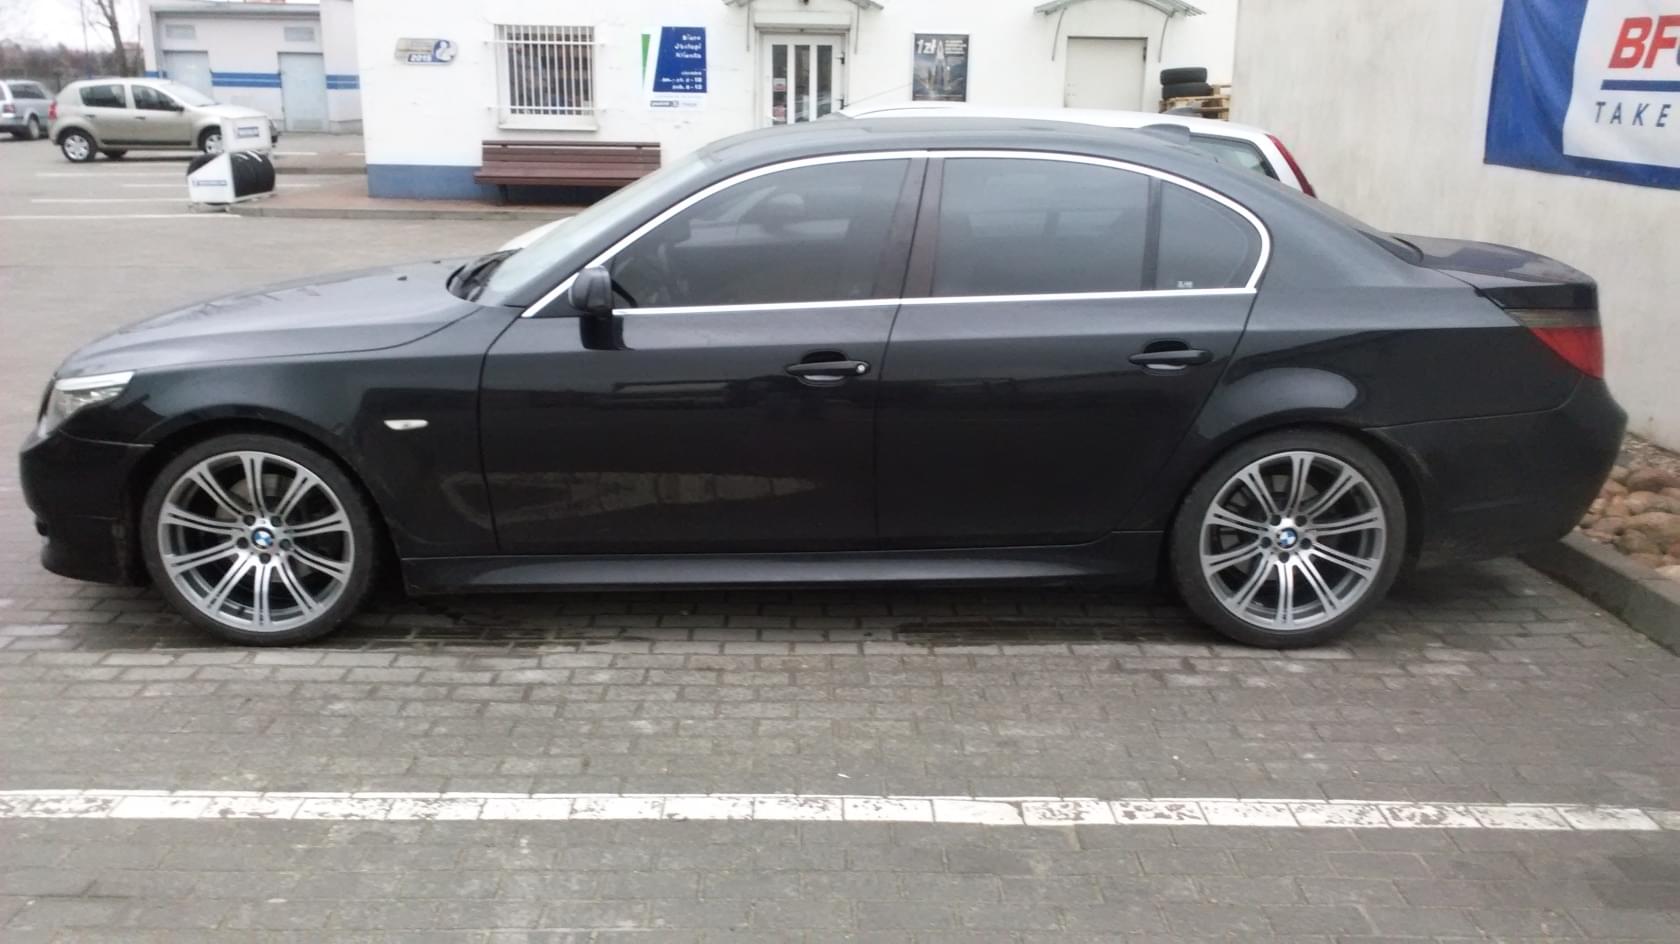 BMWklub.pl • Zobacz temat Opony + felgi 19" E60